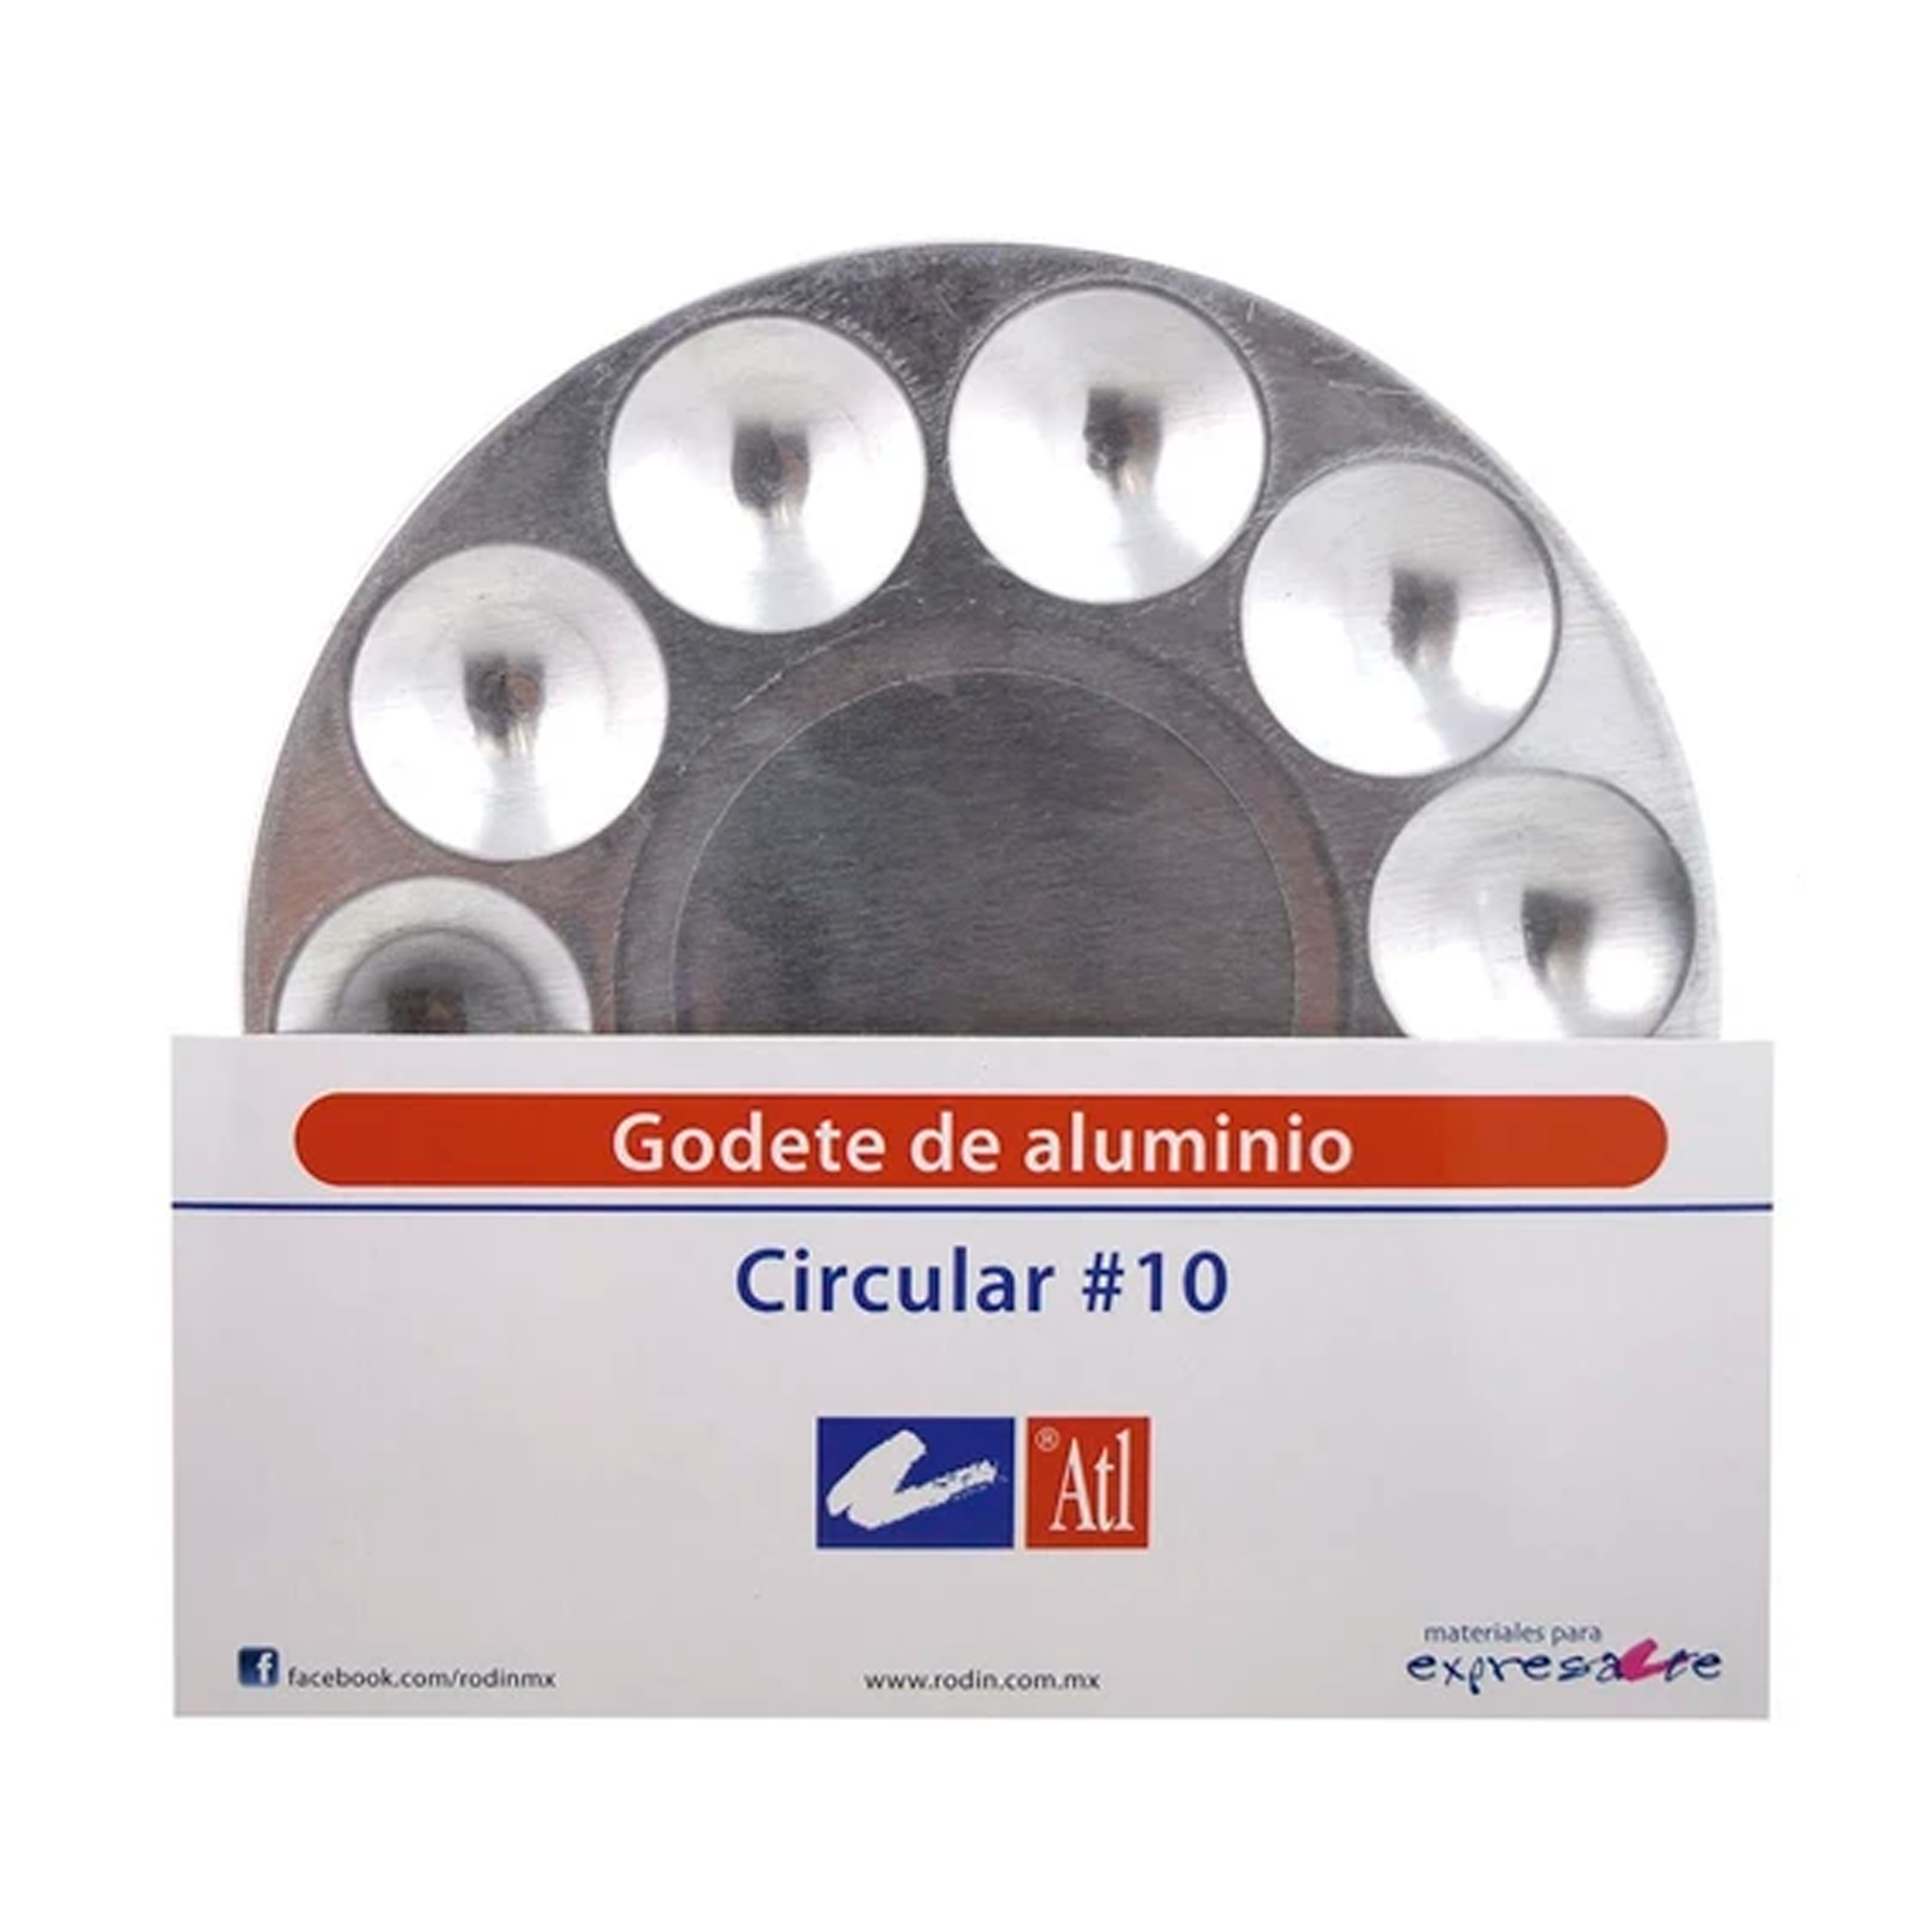 ATL - Godete circular de aluminio con 10 cavidades